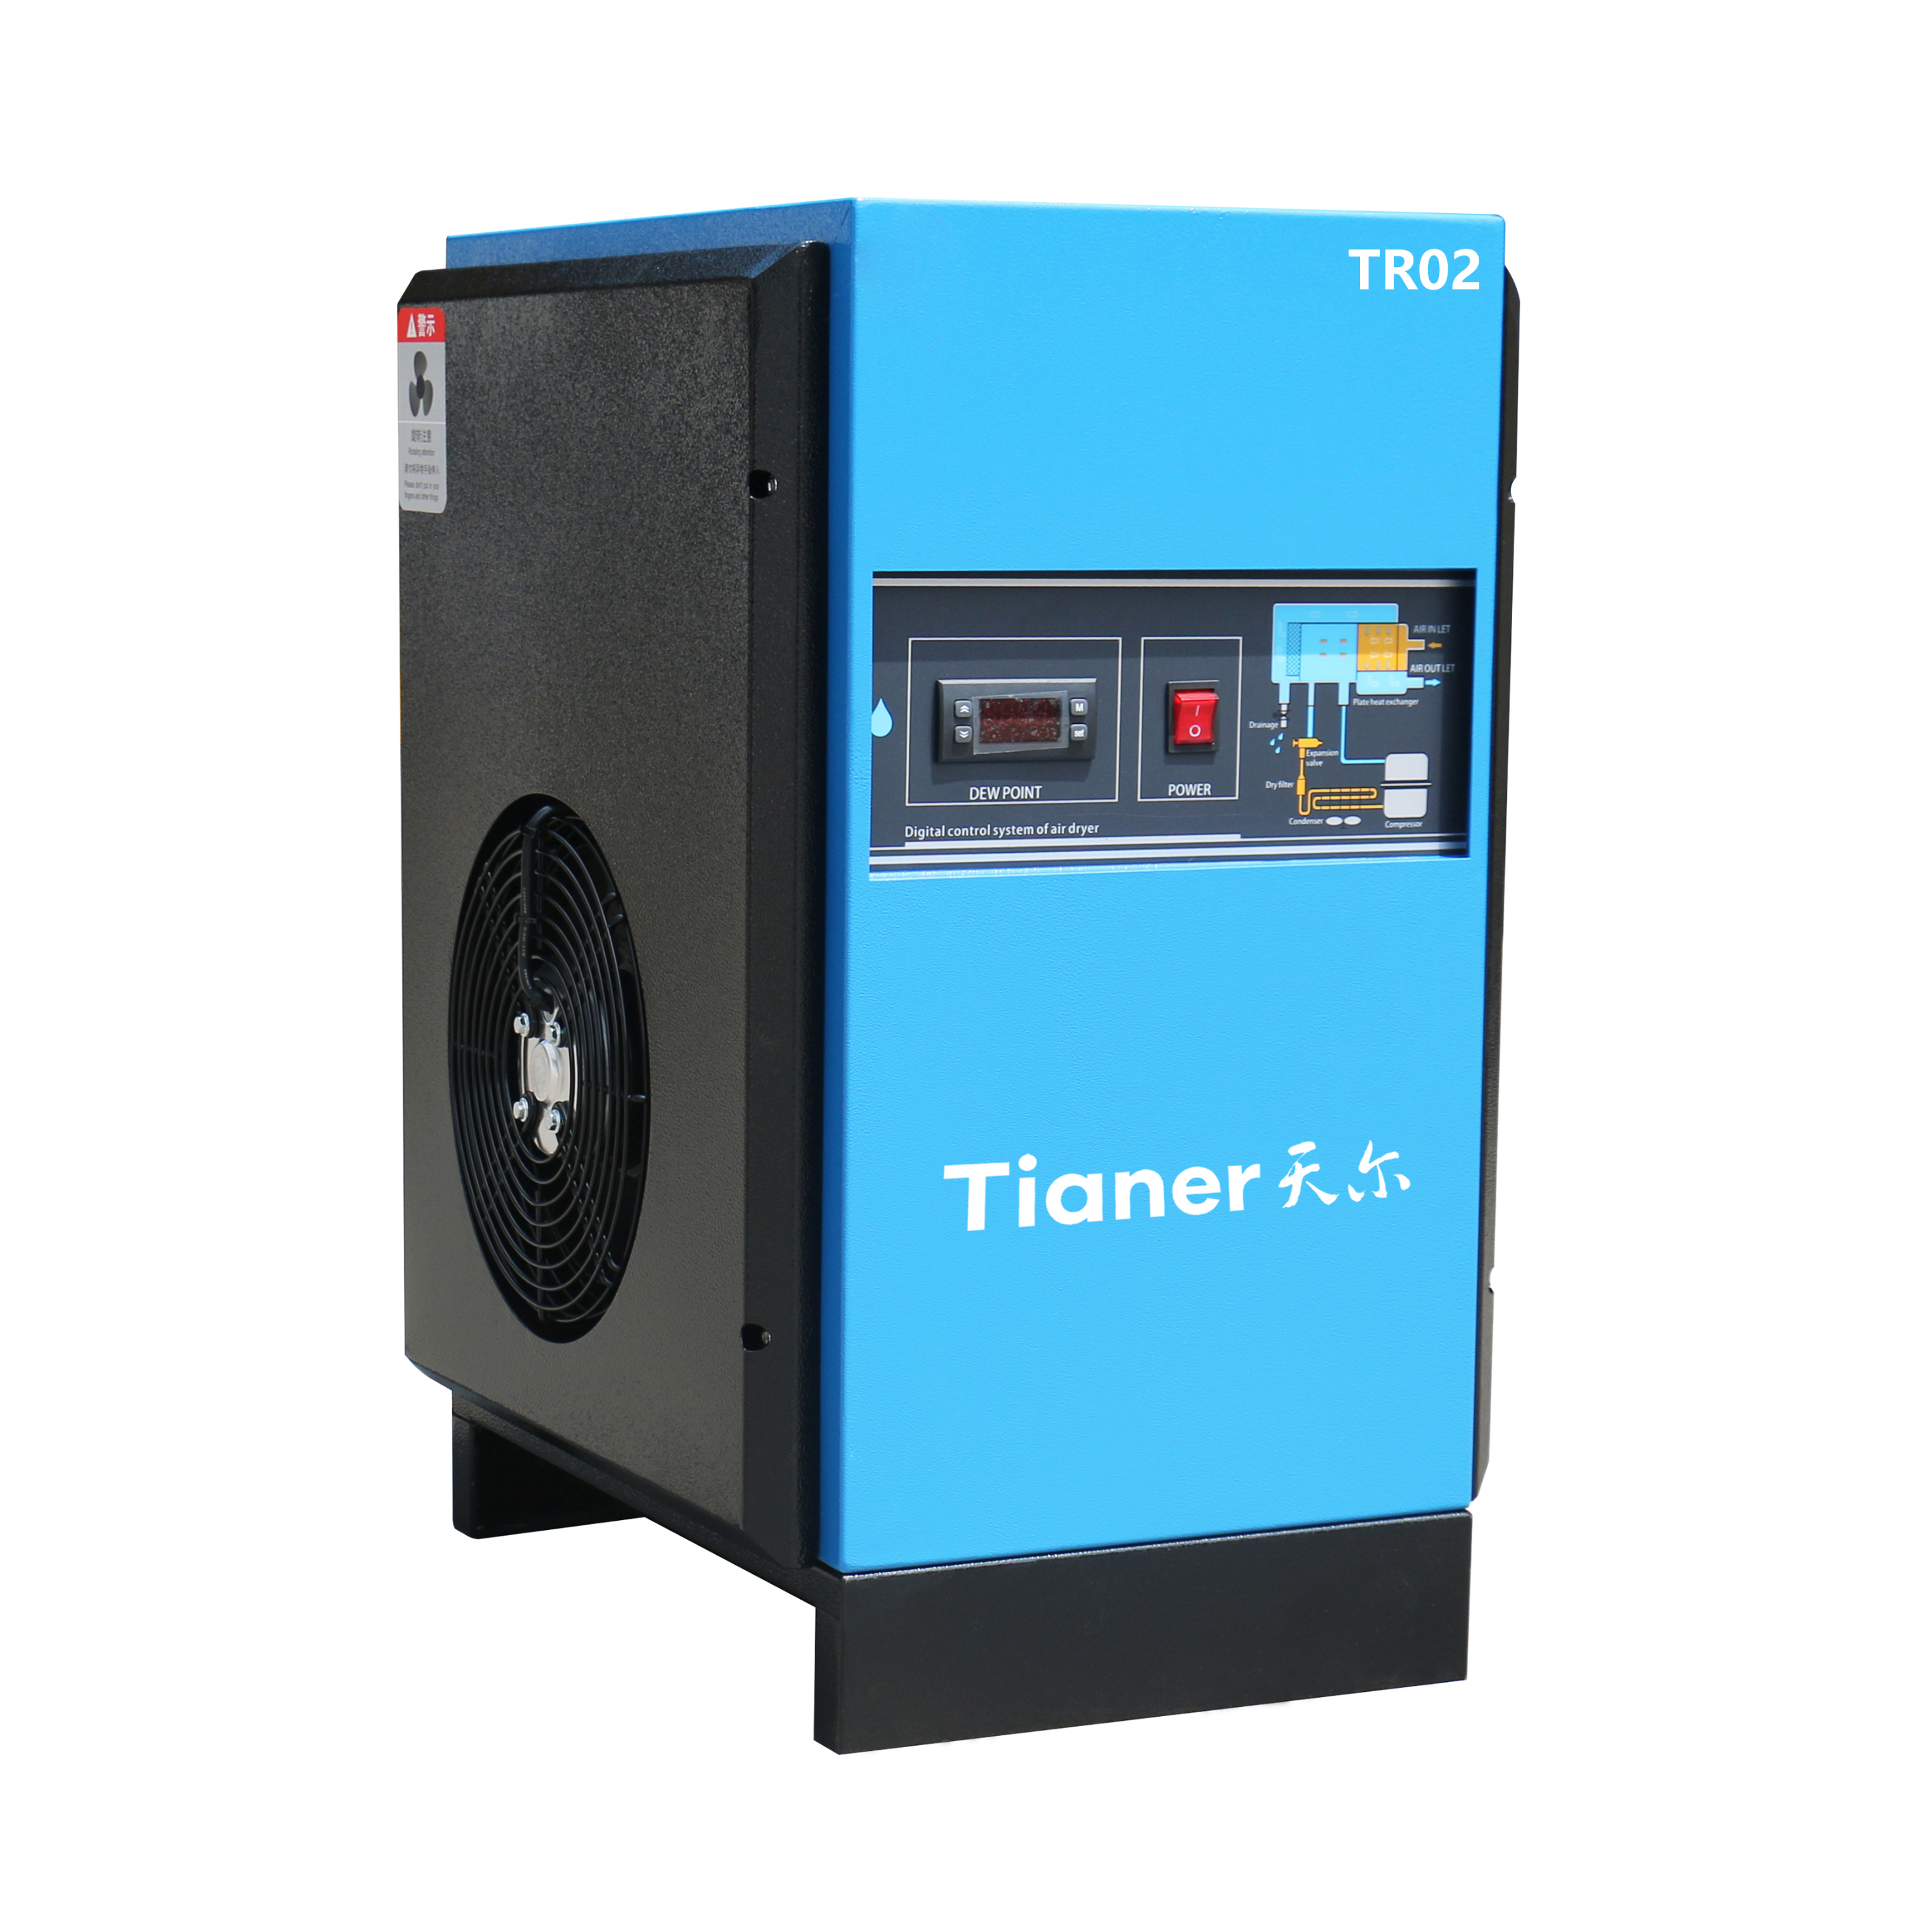 TR02 Հատուկ սառը չորանոց շրջակա միջավայրի պաշտպանության տախտակի փոխարինման լազերային կտրման համար